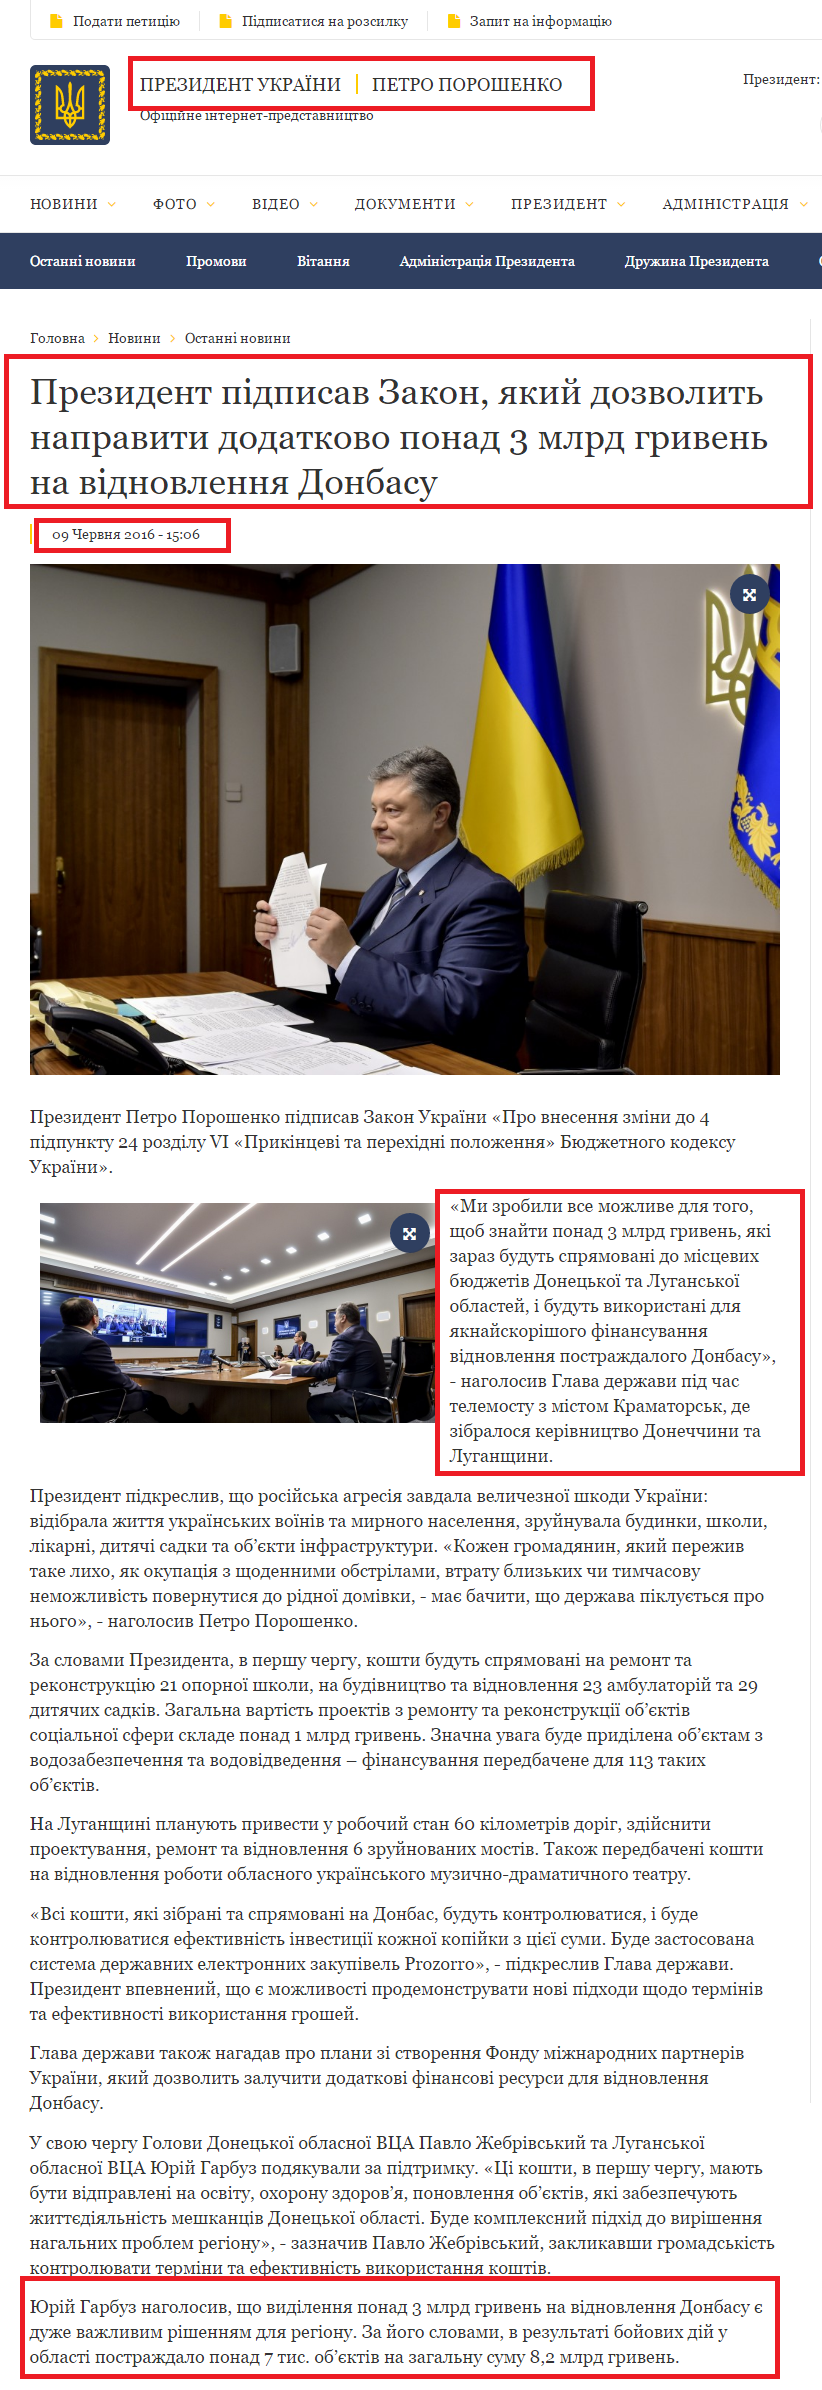 http://www.president.gov.ua/news/prezident-pidpisav-zakon-yakij-dozvolit-napraviti-dodatkovo-37333